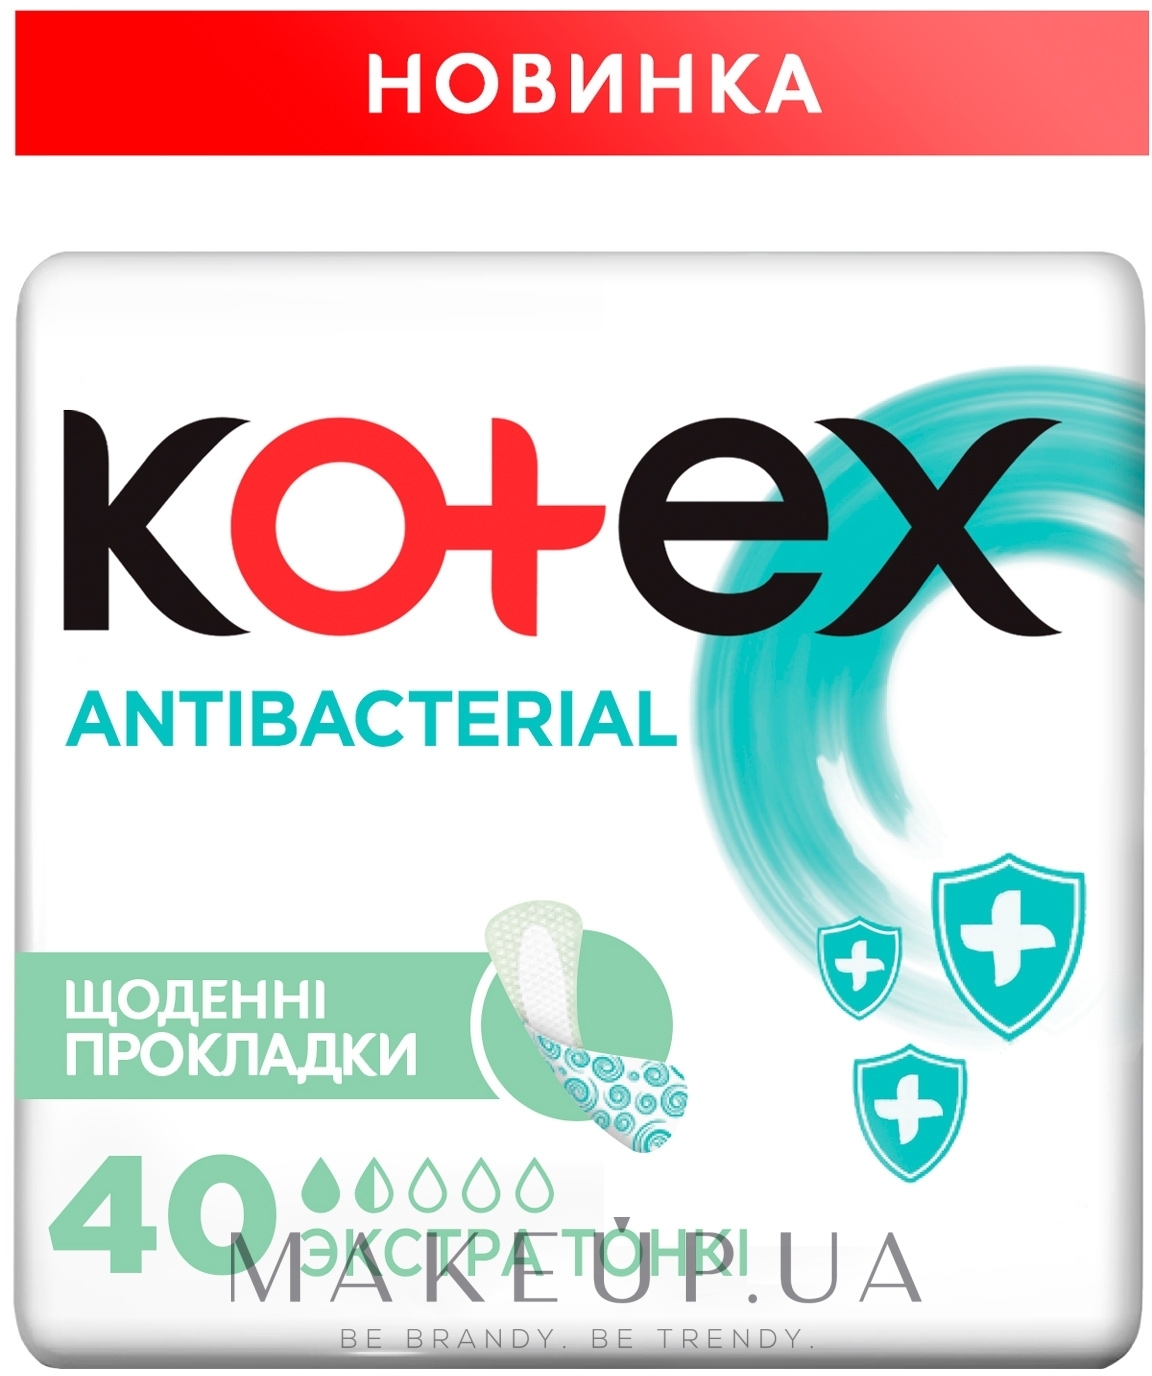 Ежедневные гигиенические прокладки "Экстра тонкие", 40шт - Kotex Antibac Extra Thin — фото 40шт